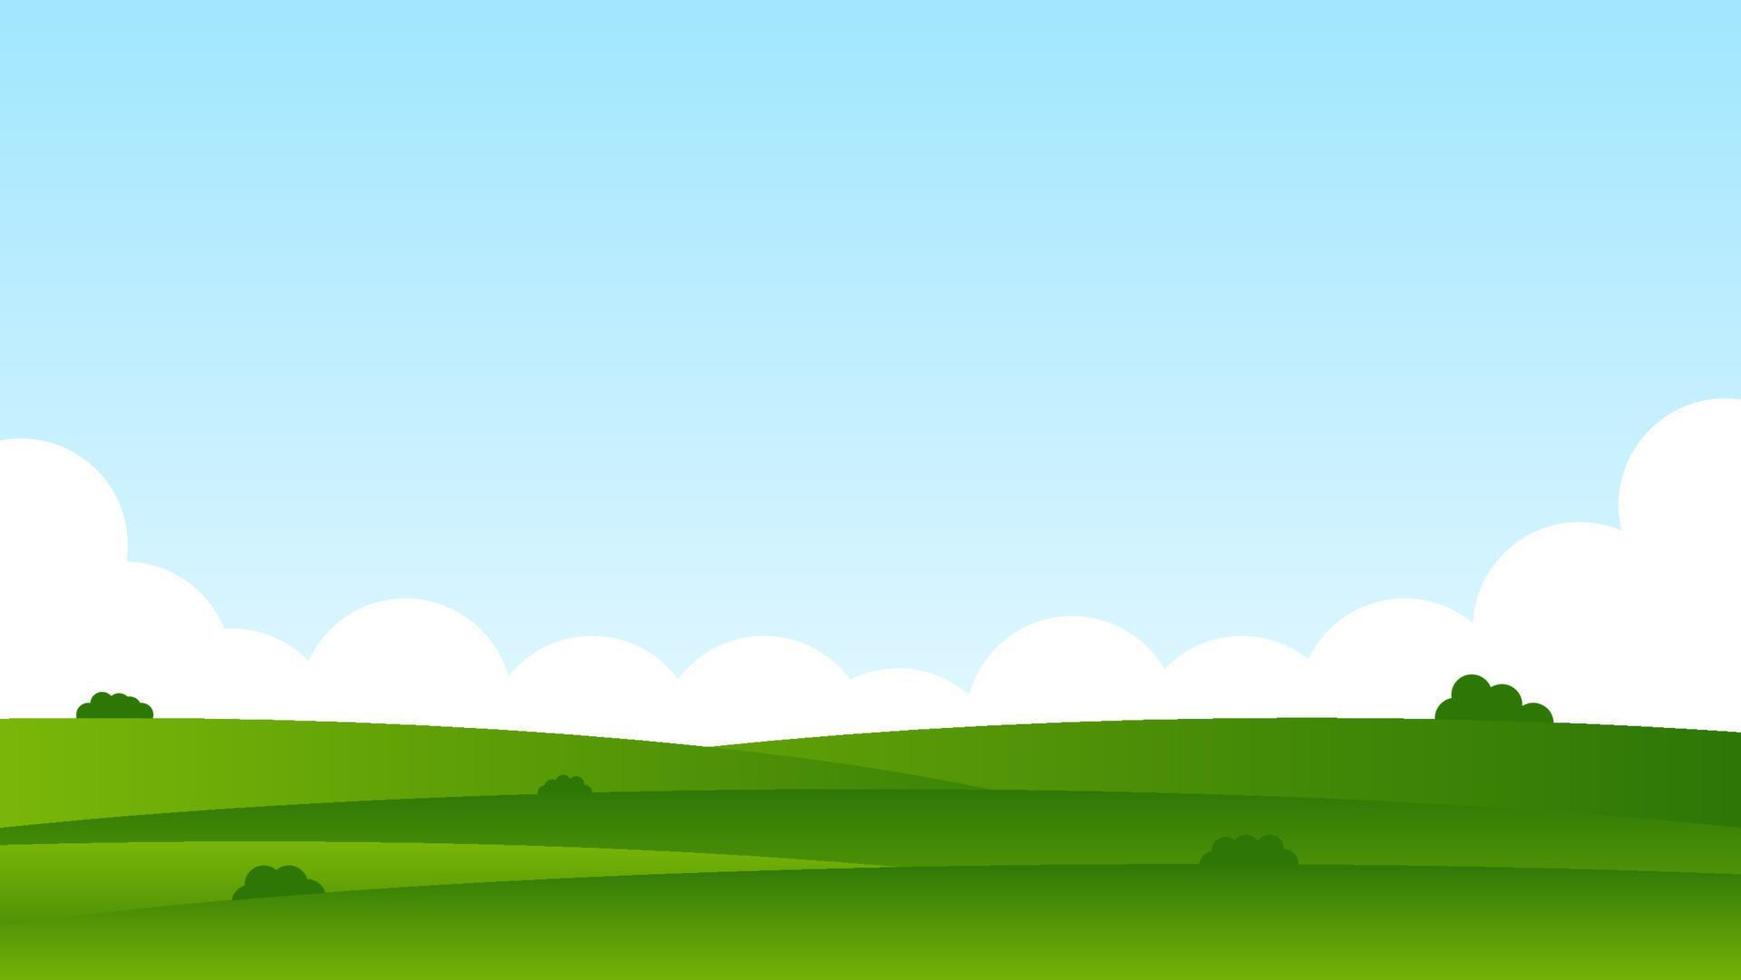 cena de desenho de paisagem com colinas verdes e nuvem branca no fundo do céu azul de verão com espaço de cópia vetor